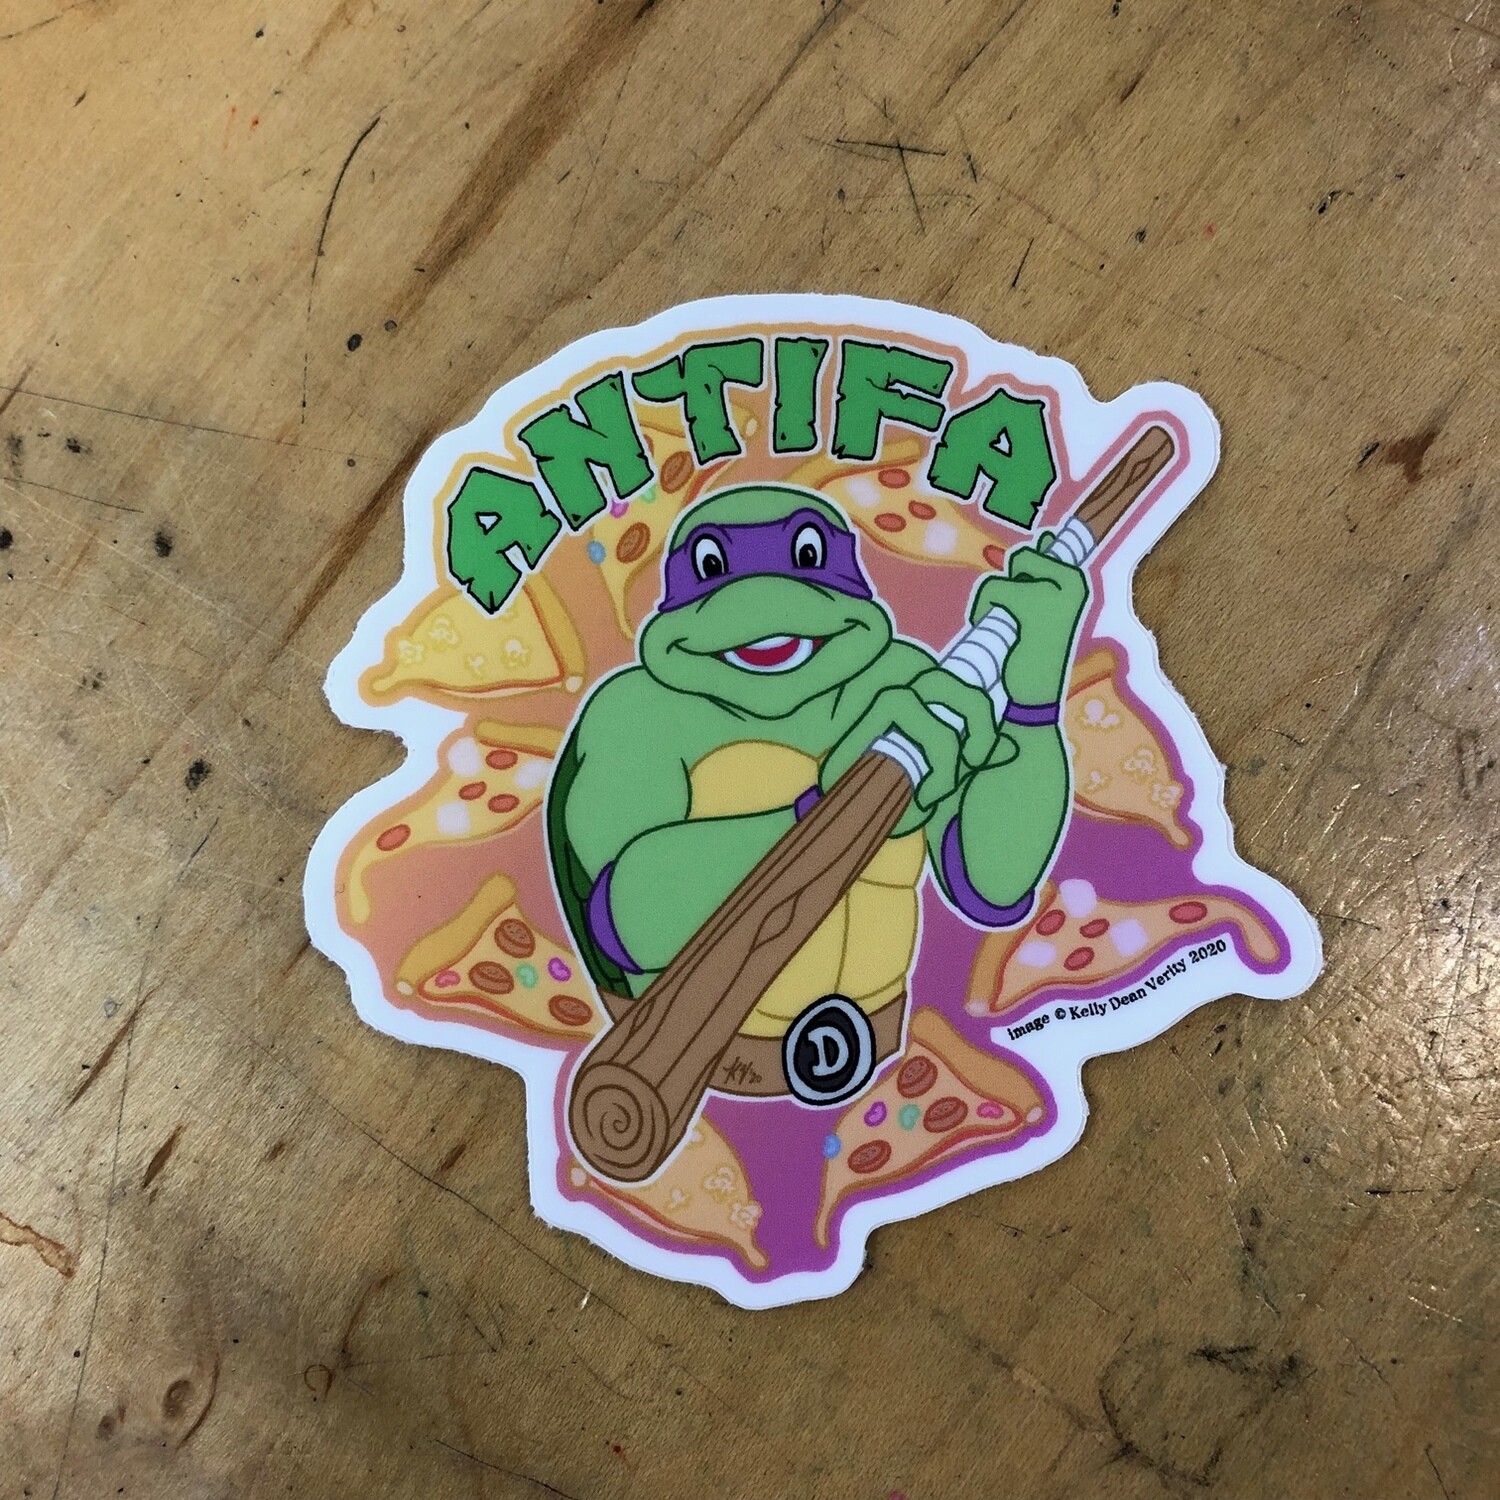 Antifa TMNT - Sticker by Kelly Dean Verity